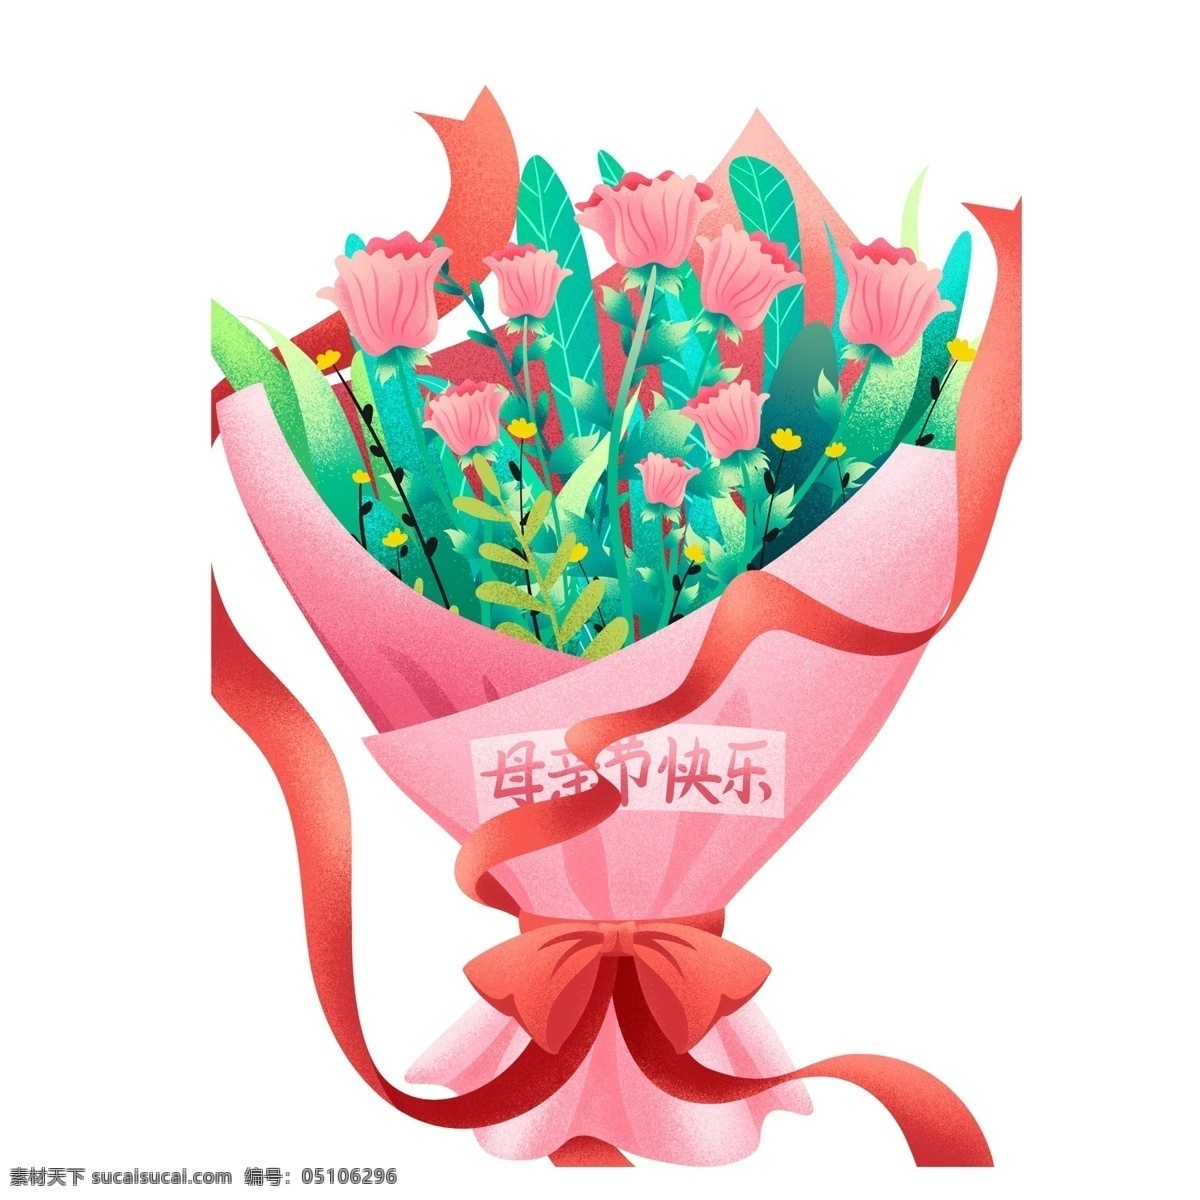 唯美 温馨 艺术 玫瑰花 插画 元素 母亲节 节日 手绘 粉红 鲜花 一束花 母亲节快乐